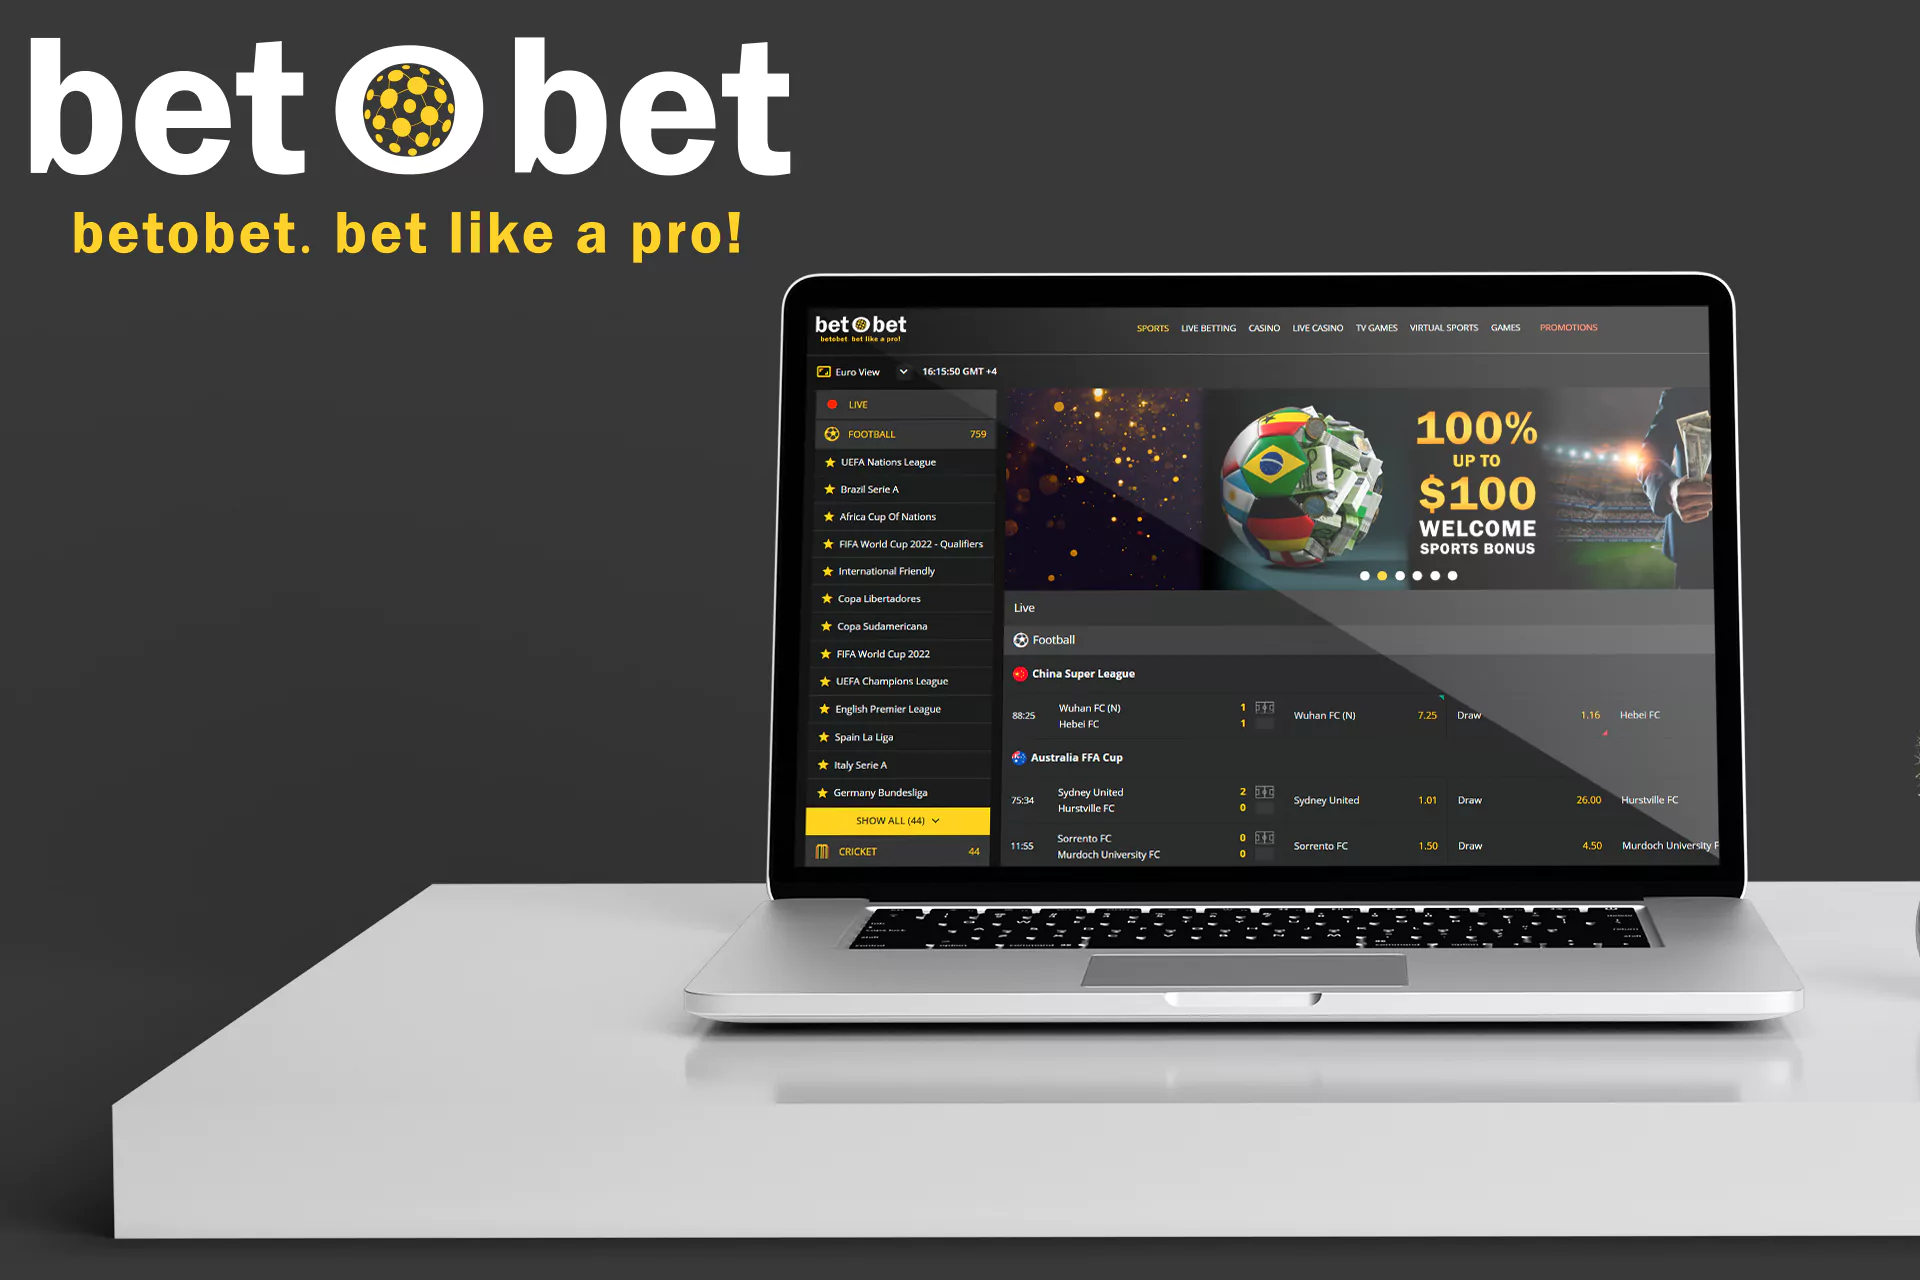 Open the Bet O Bet official website.